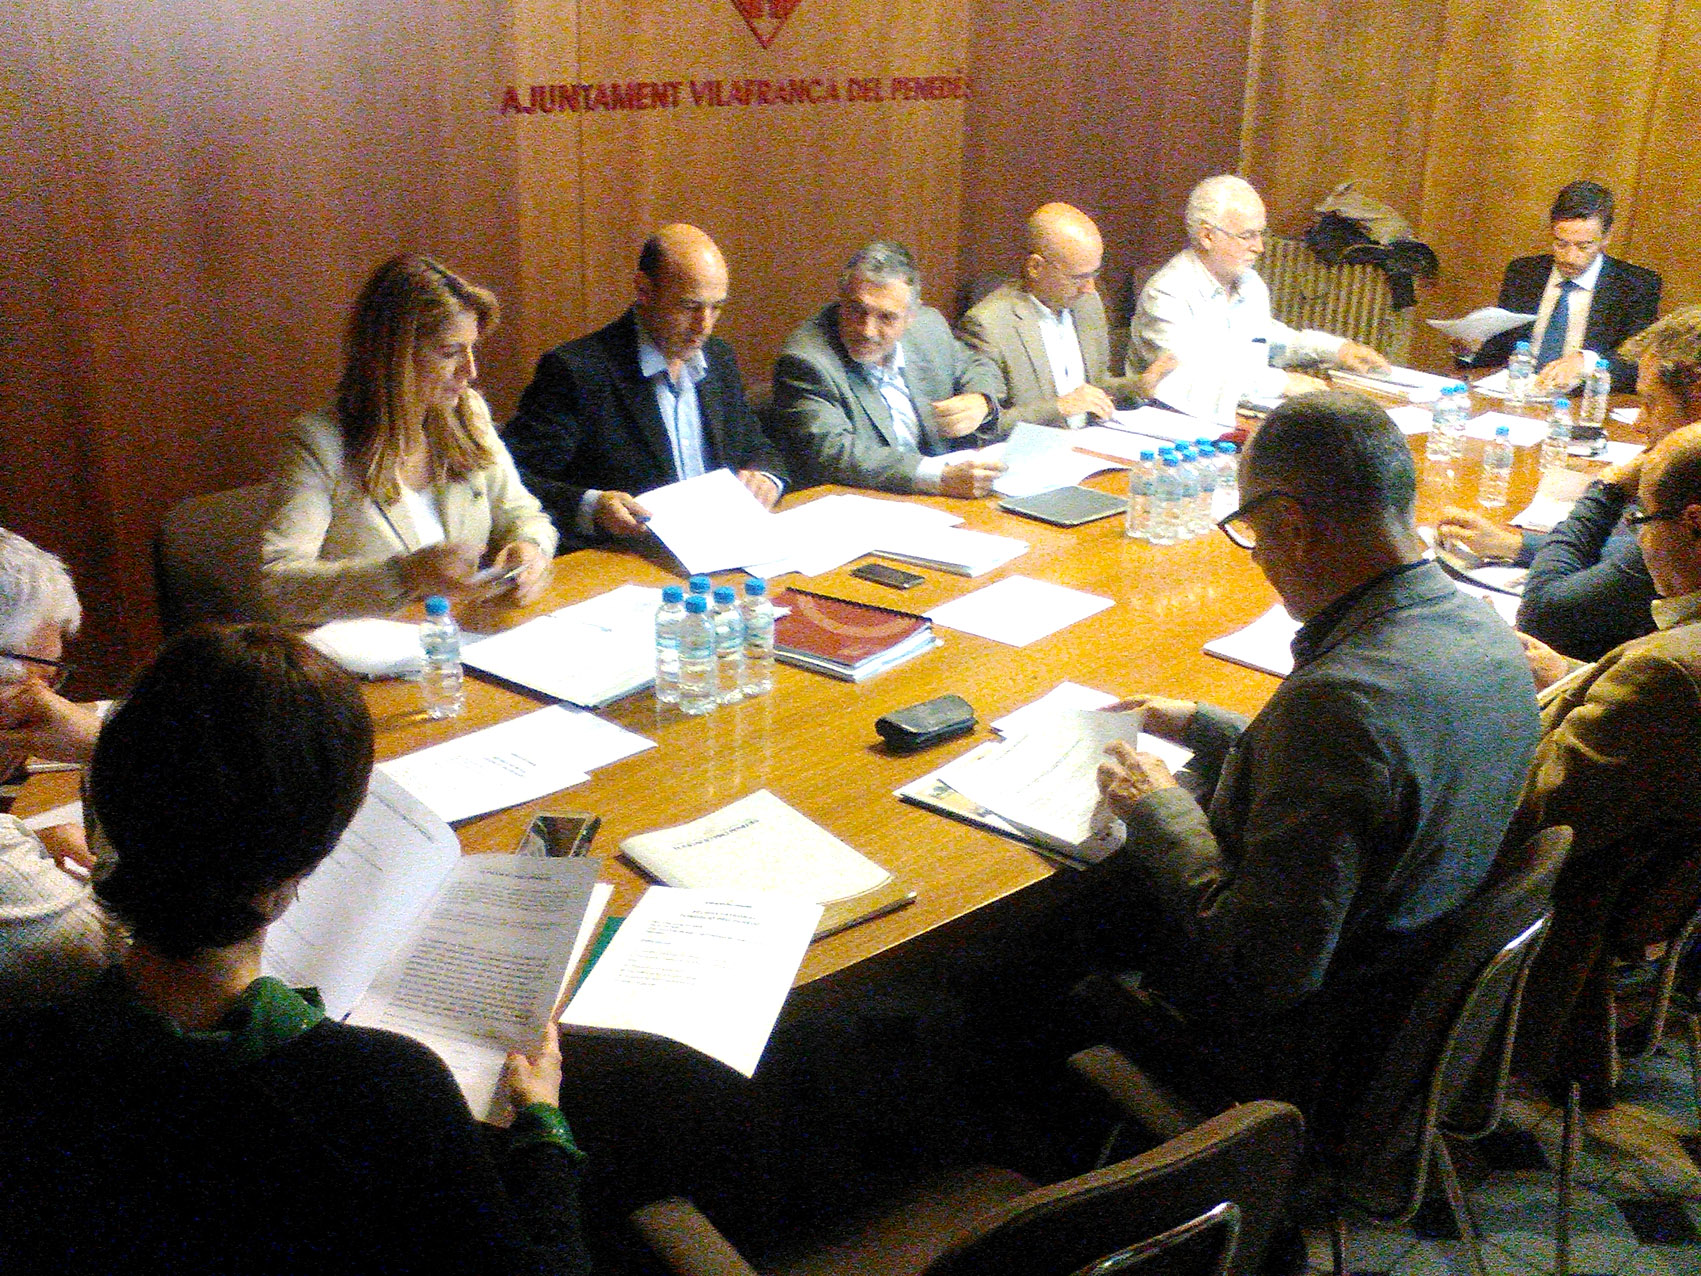 Balanç de l’any 2015 a la reunió de Patronat de la Fundació